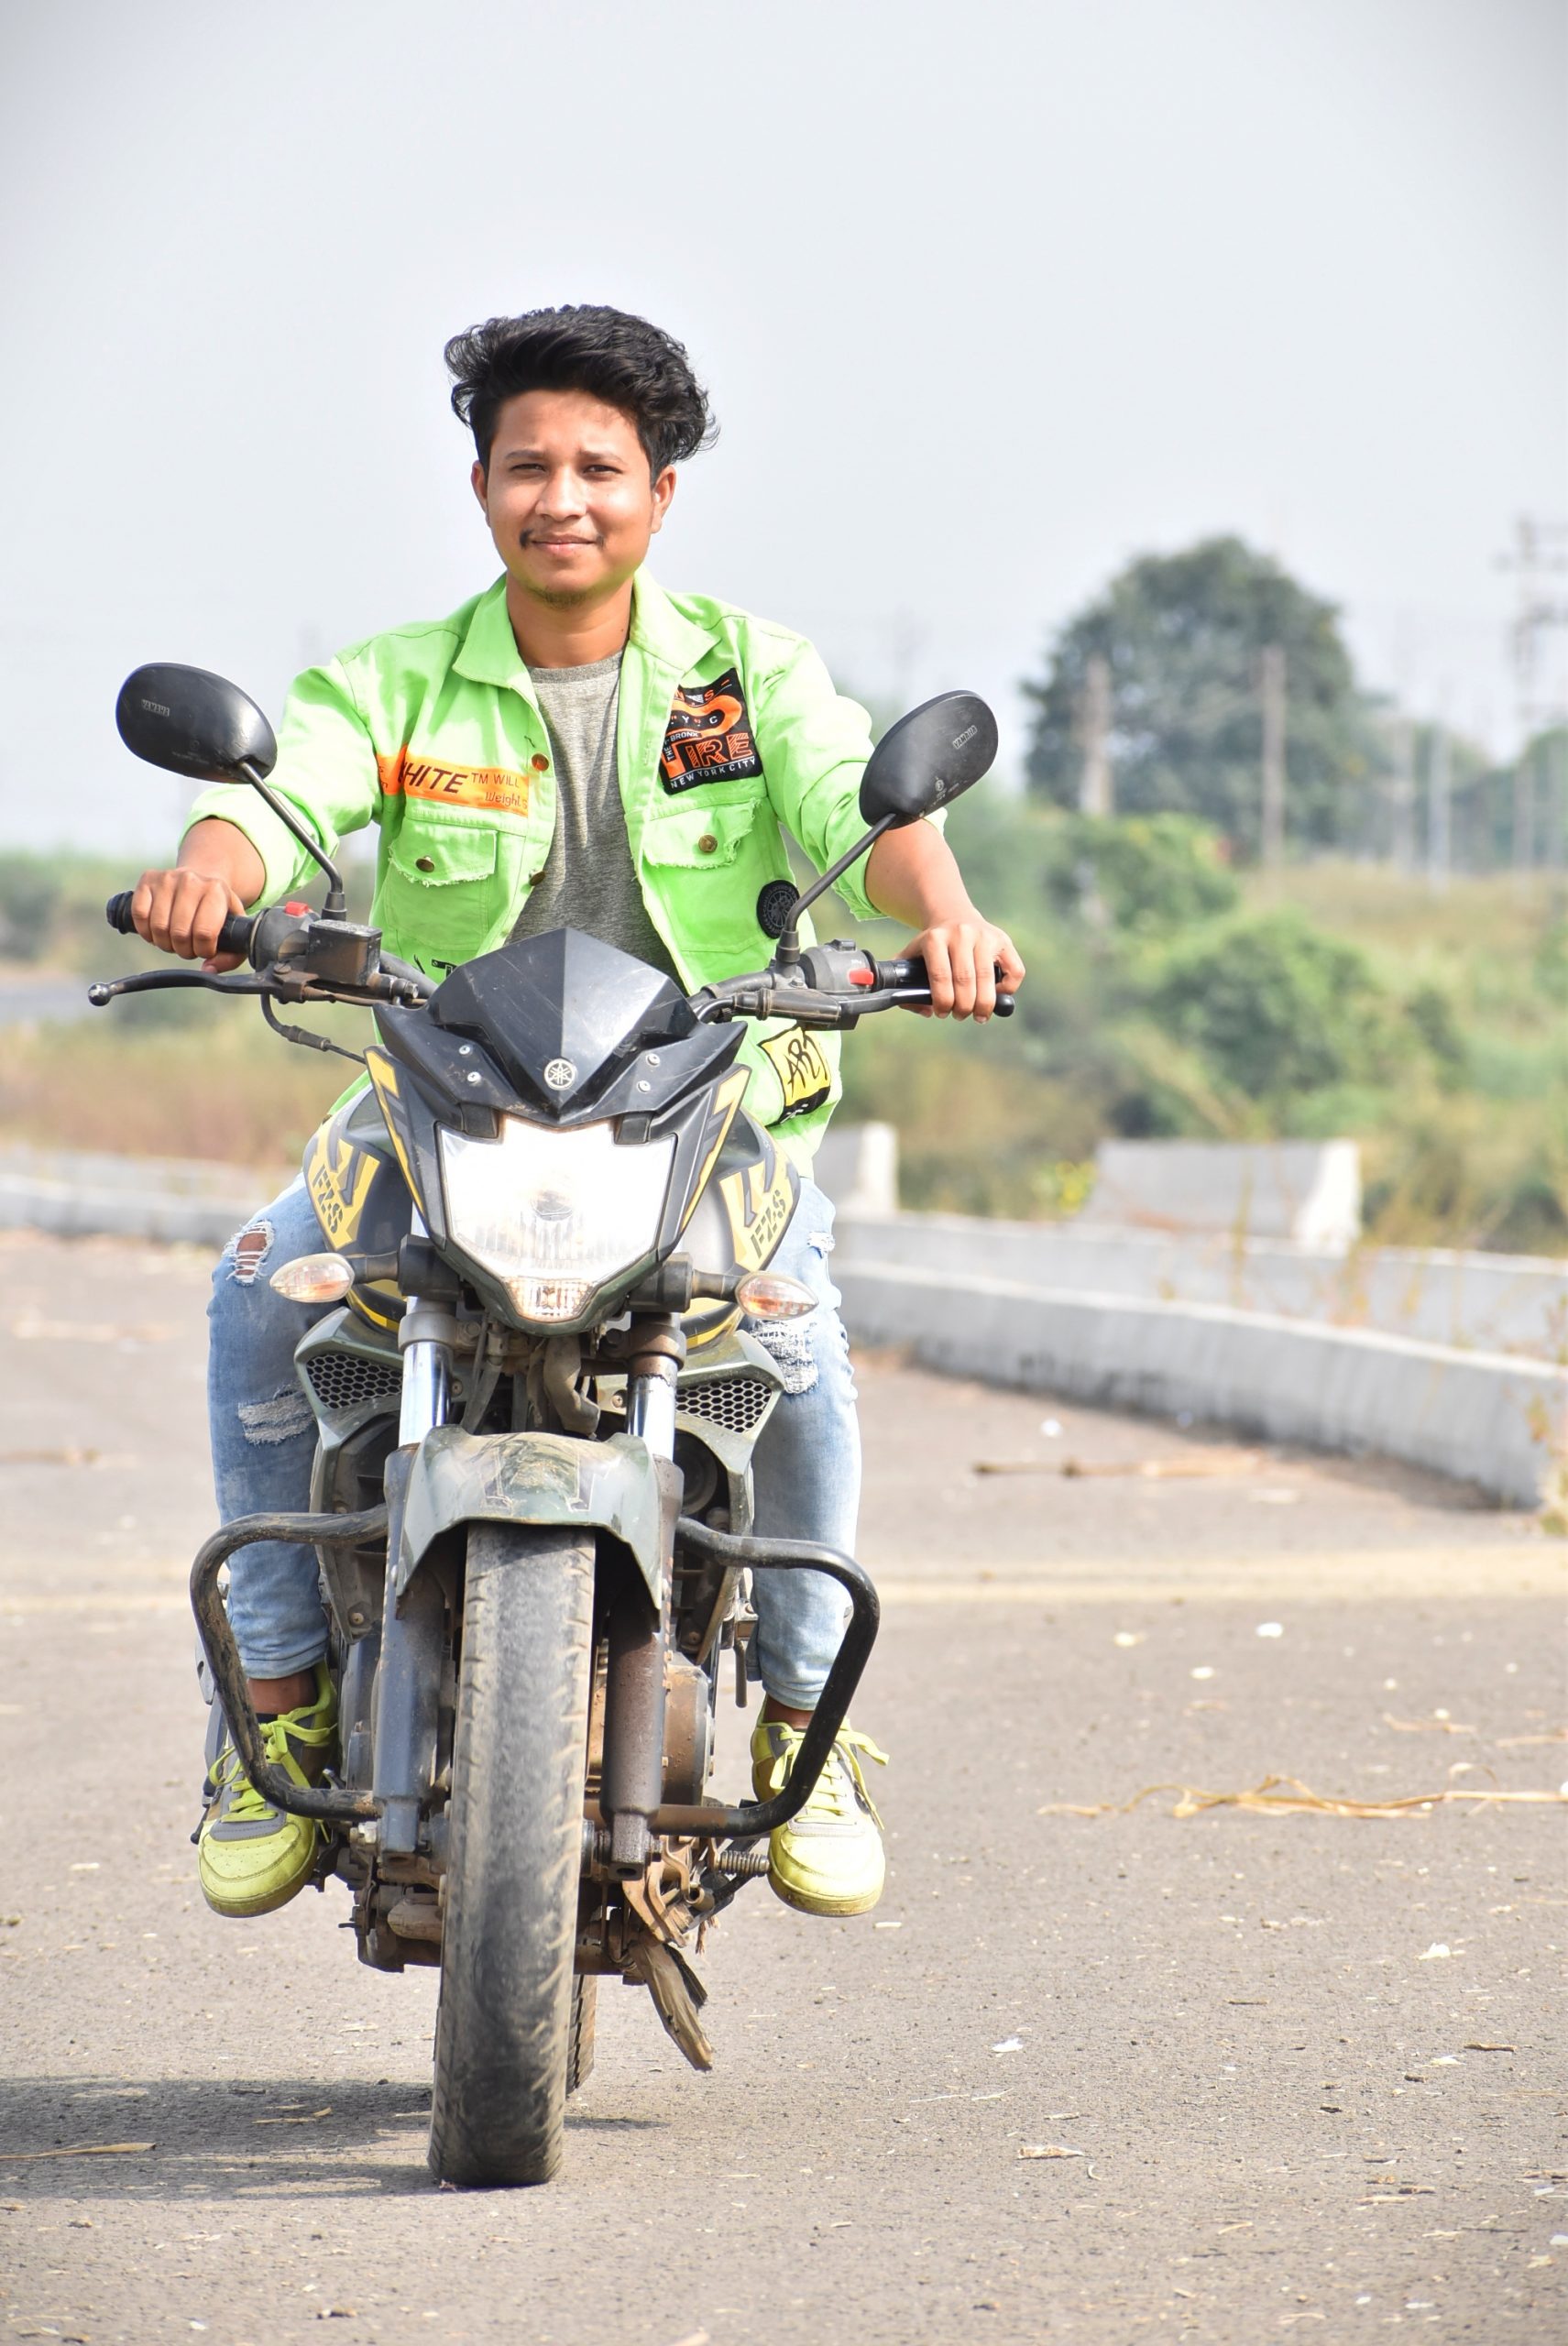 A boy on a motocycle